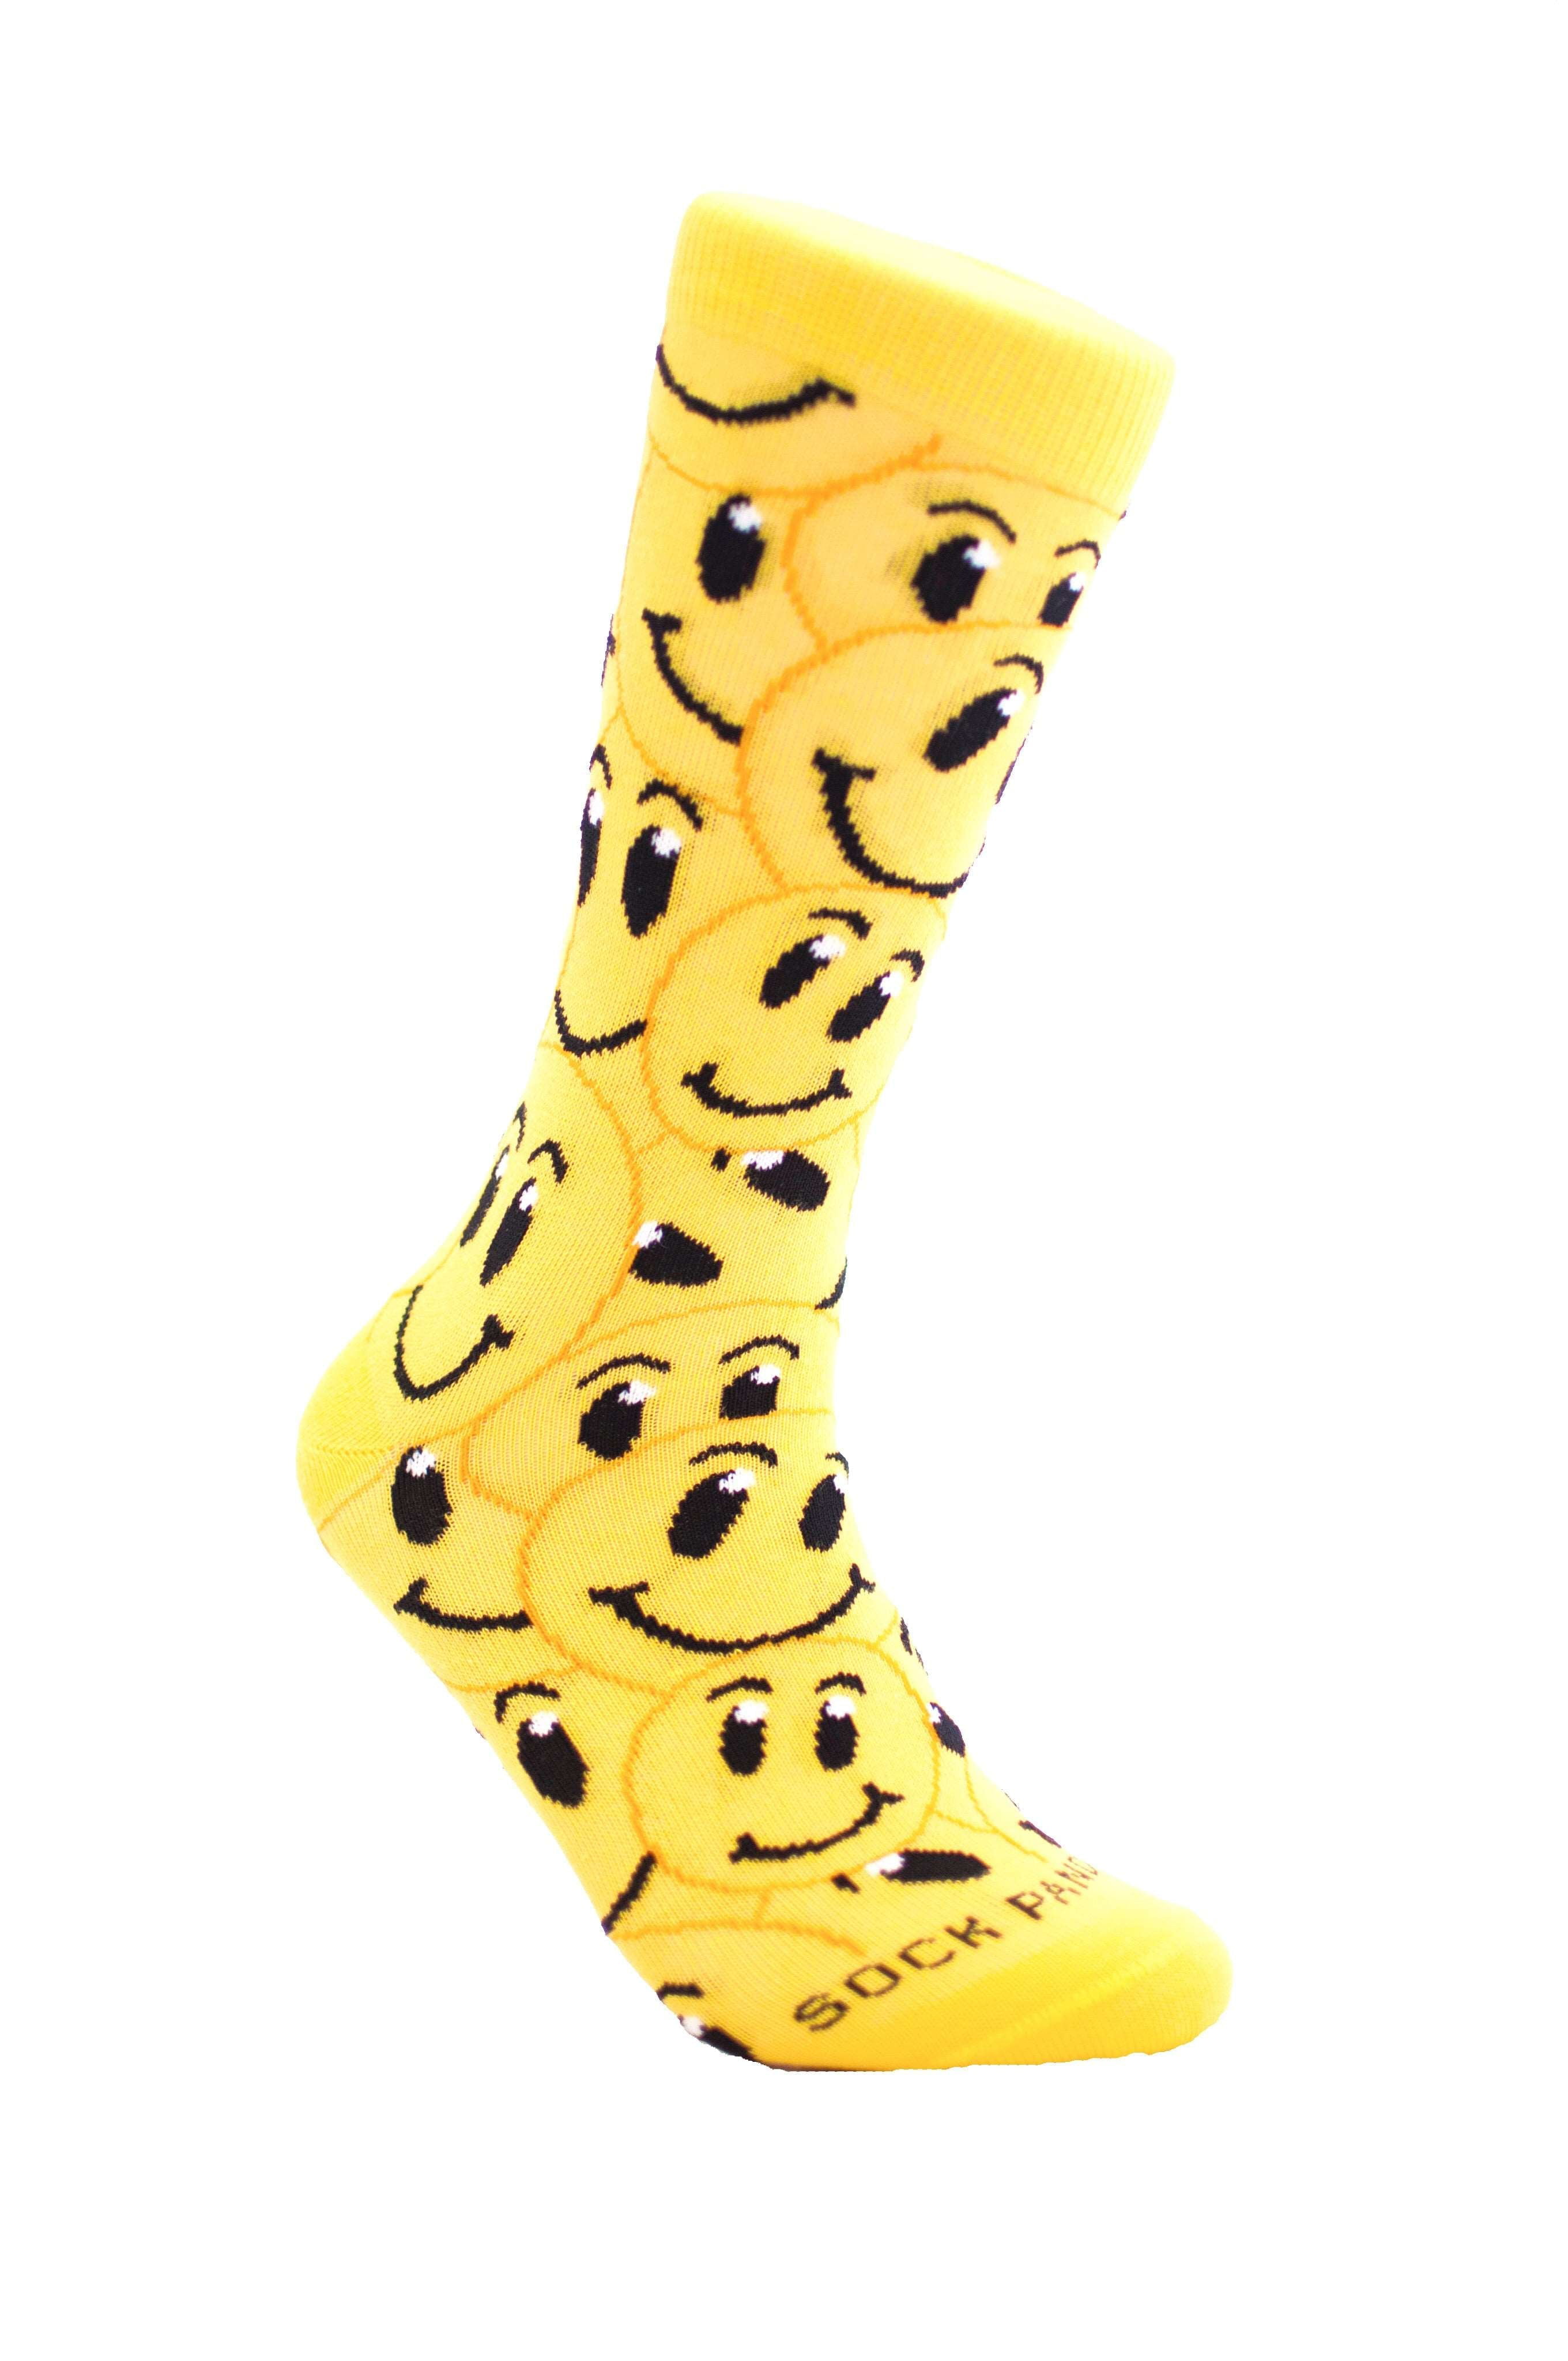 Emoji Socks Smiley's Design Socks Smile Smiley Fun Novelty Size 9-11 Black 